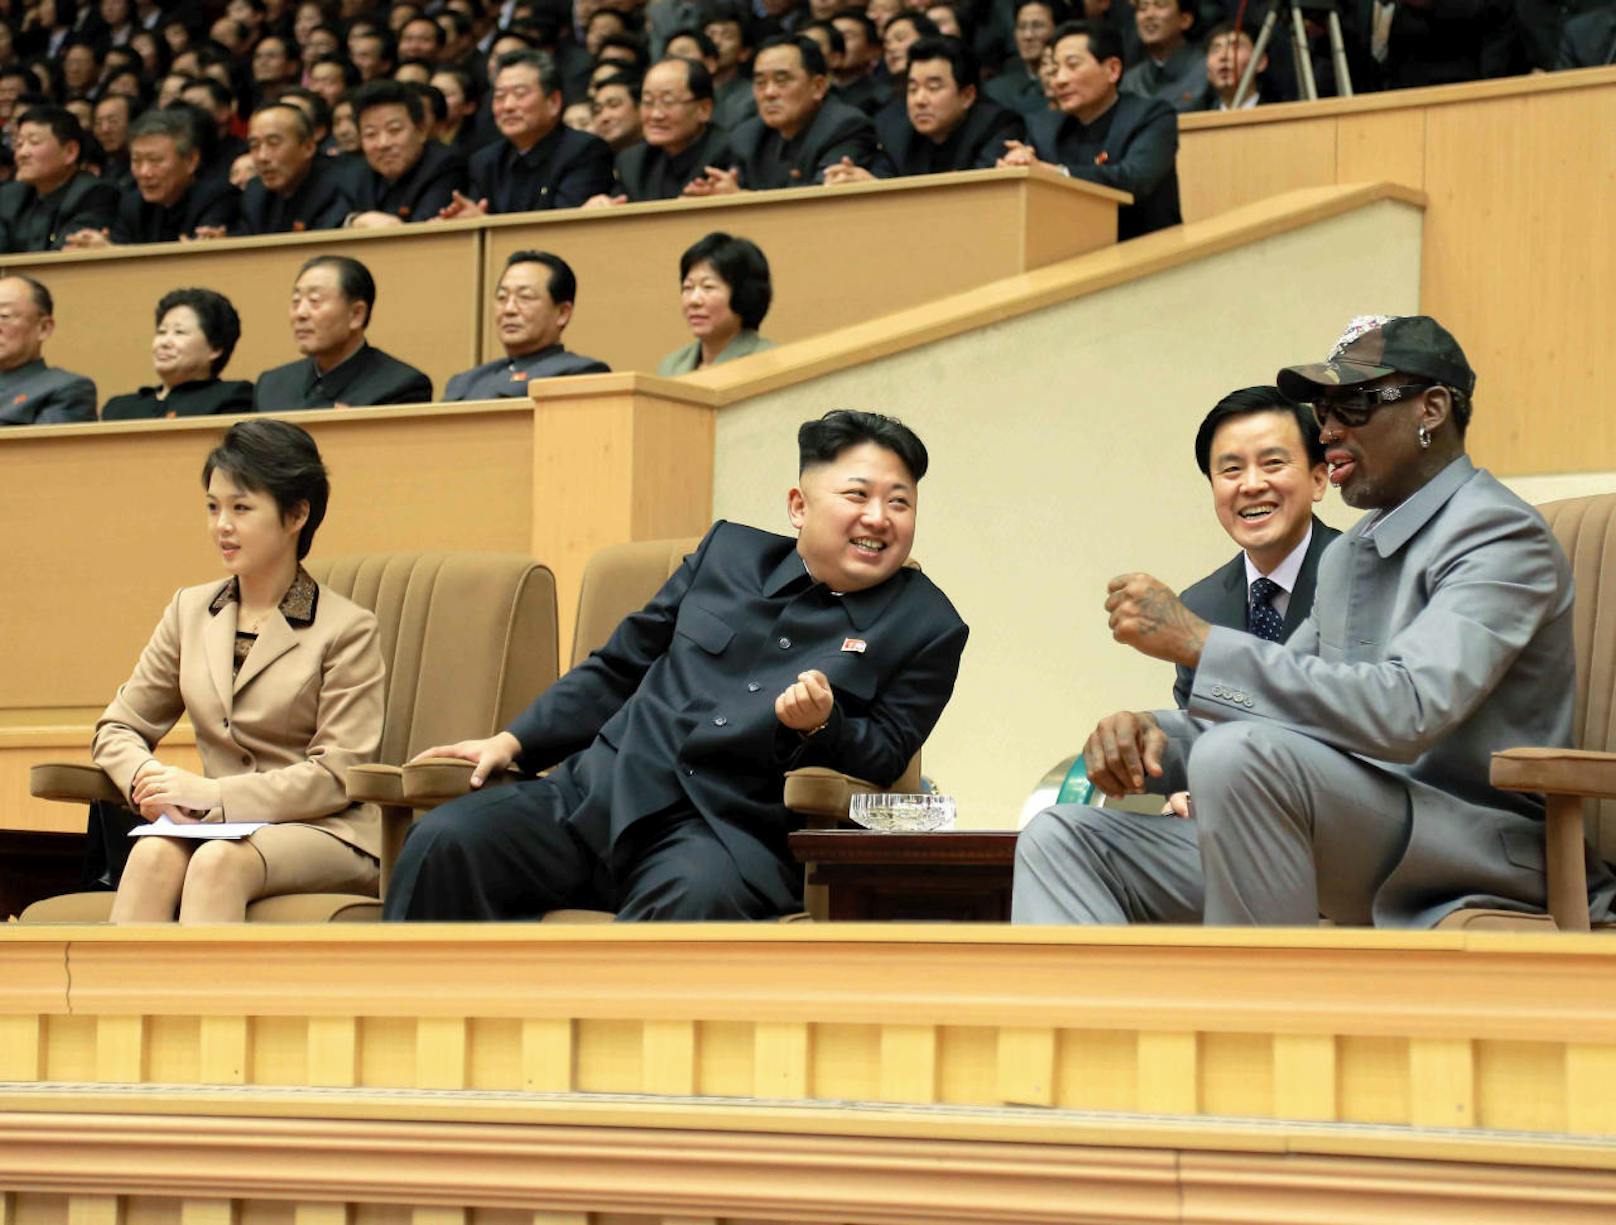 Schauen bei einem weiteren Besuch zusammen ein Basketballspiel: Kim Jong-un (links) und Dennis Rodman. (9. Januar 2014)